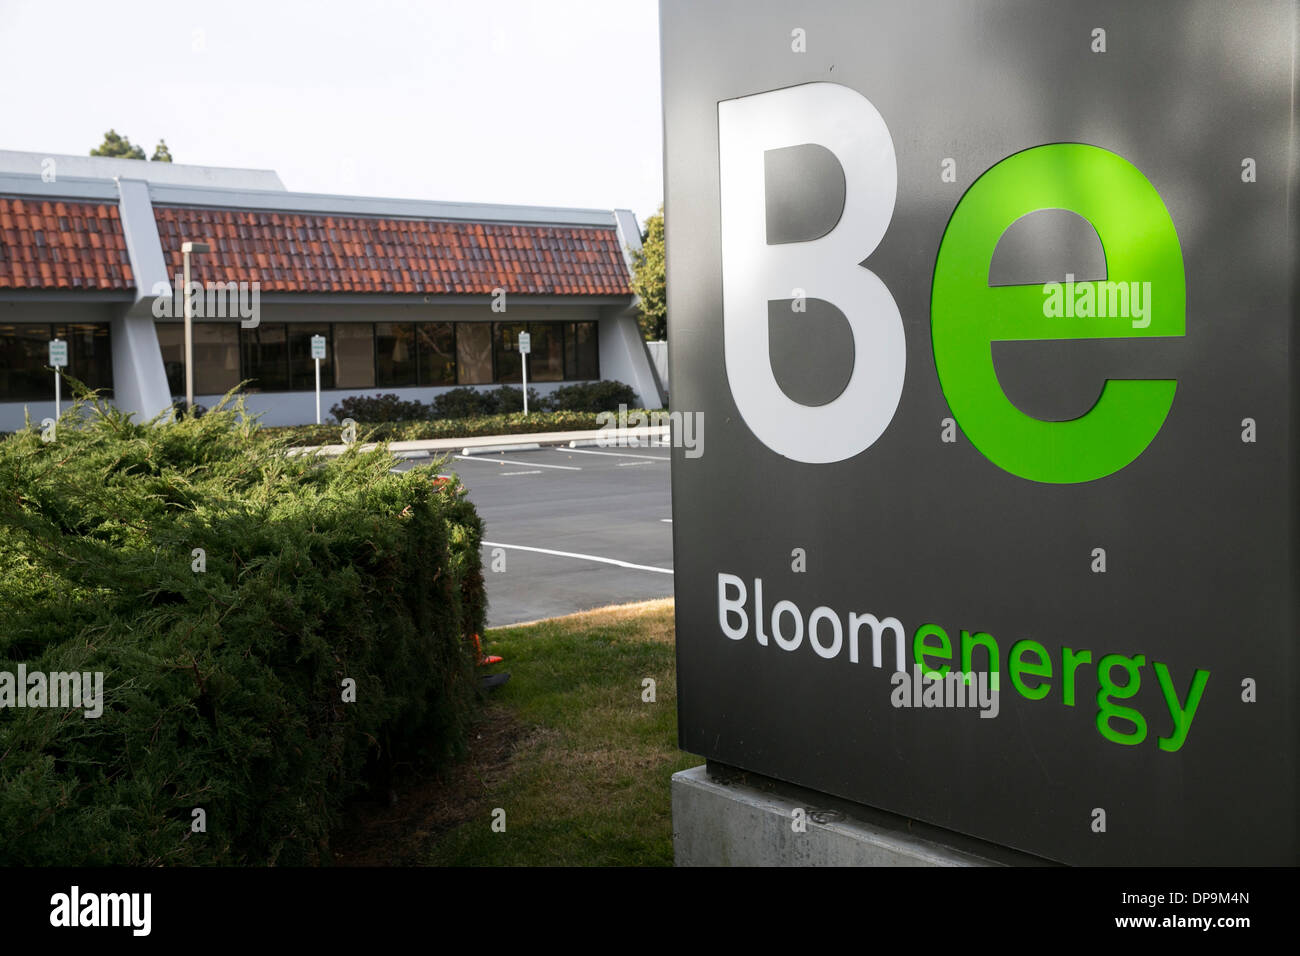 La sede centrale di energia Bloom a Sunnyvale, in California. Foto Stock